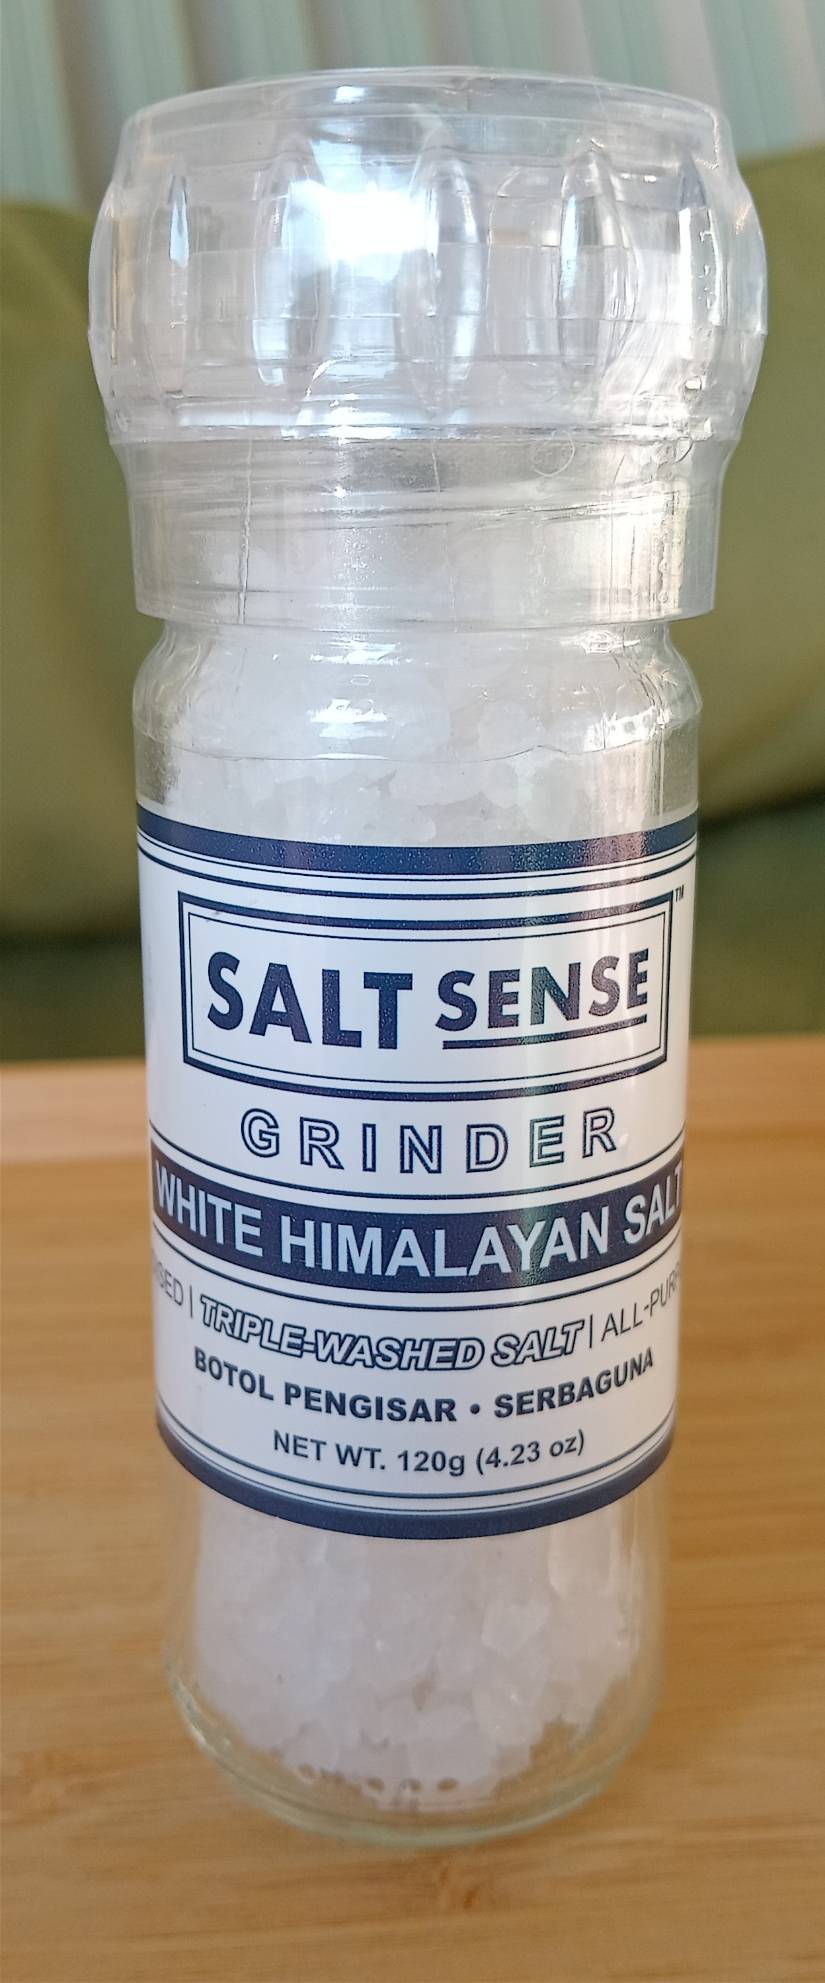 White Himalayan Salt-Grunder-, Salt Sense 120g